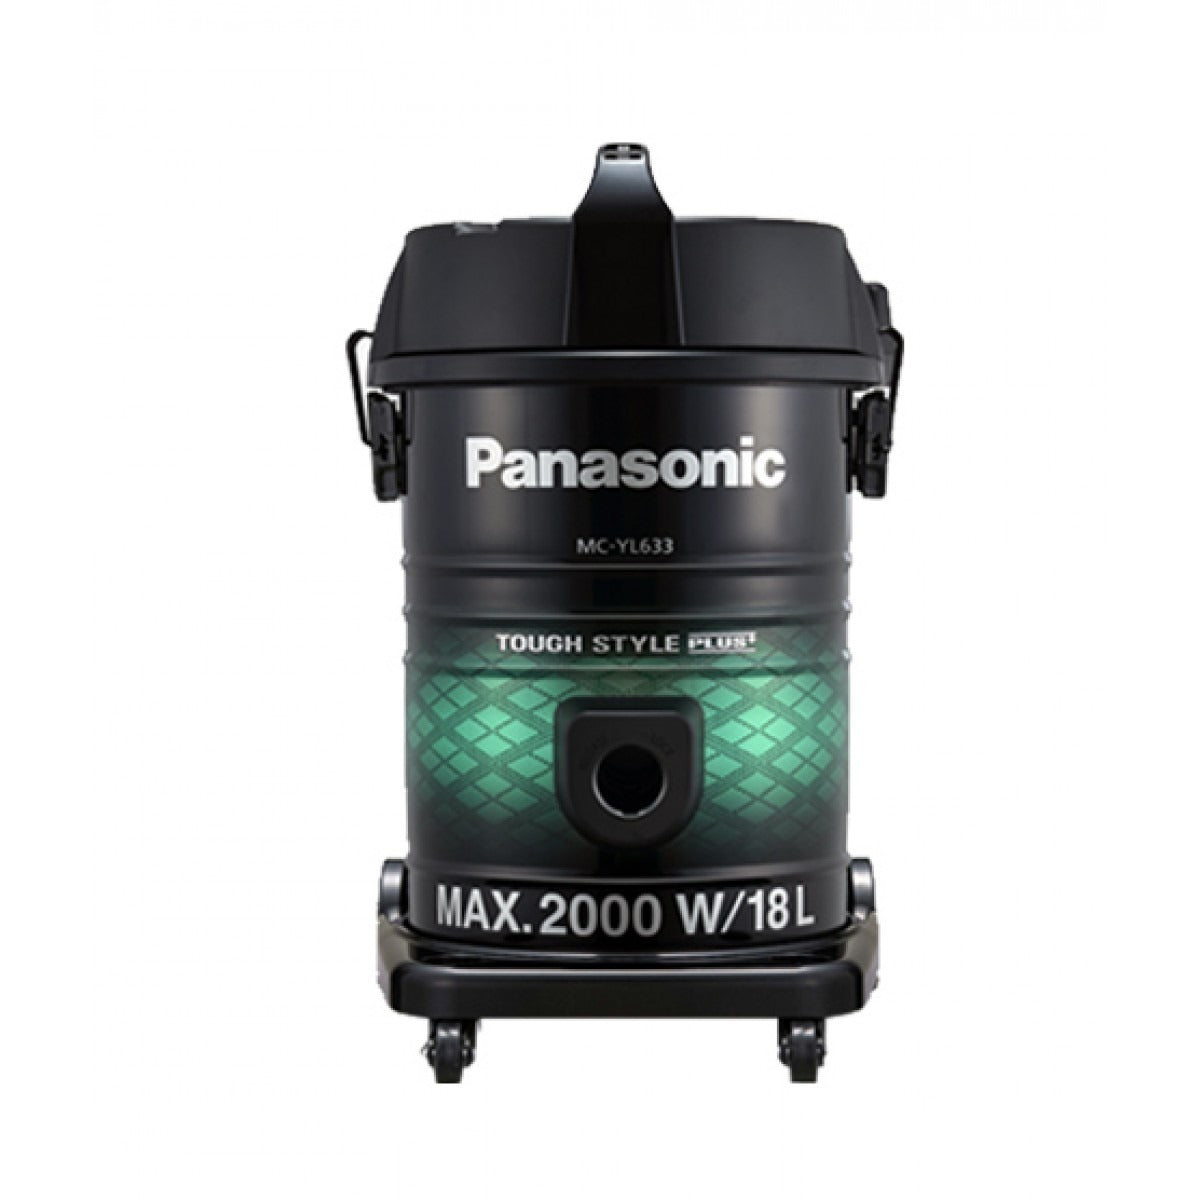 Panasonic Vacuum Cleaner 2000W MC-YL633G149